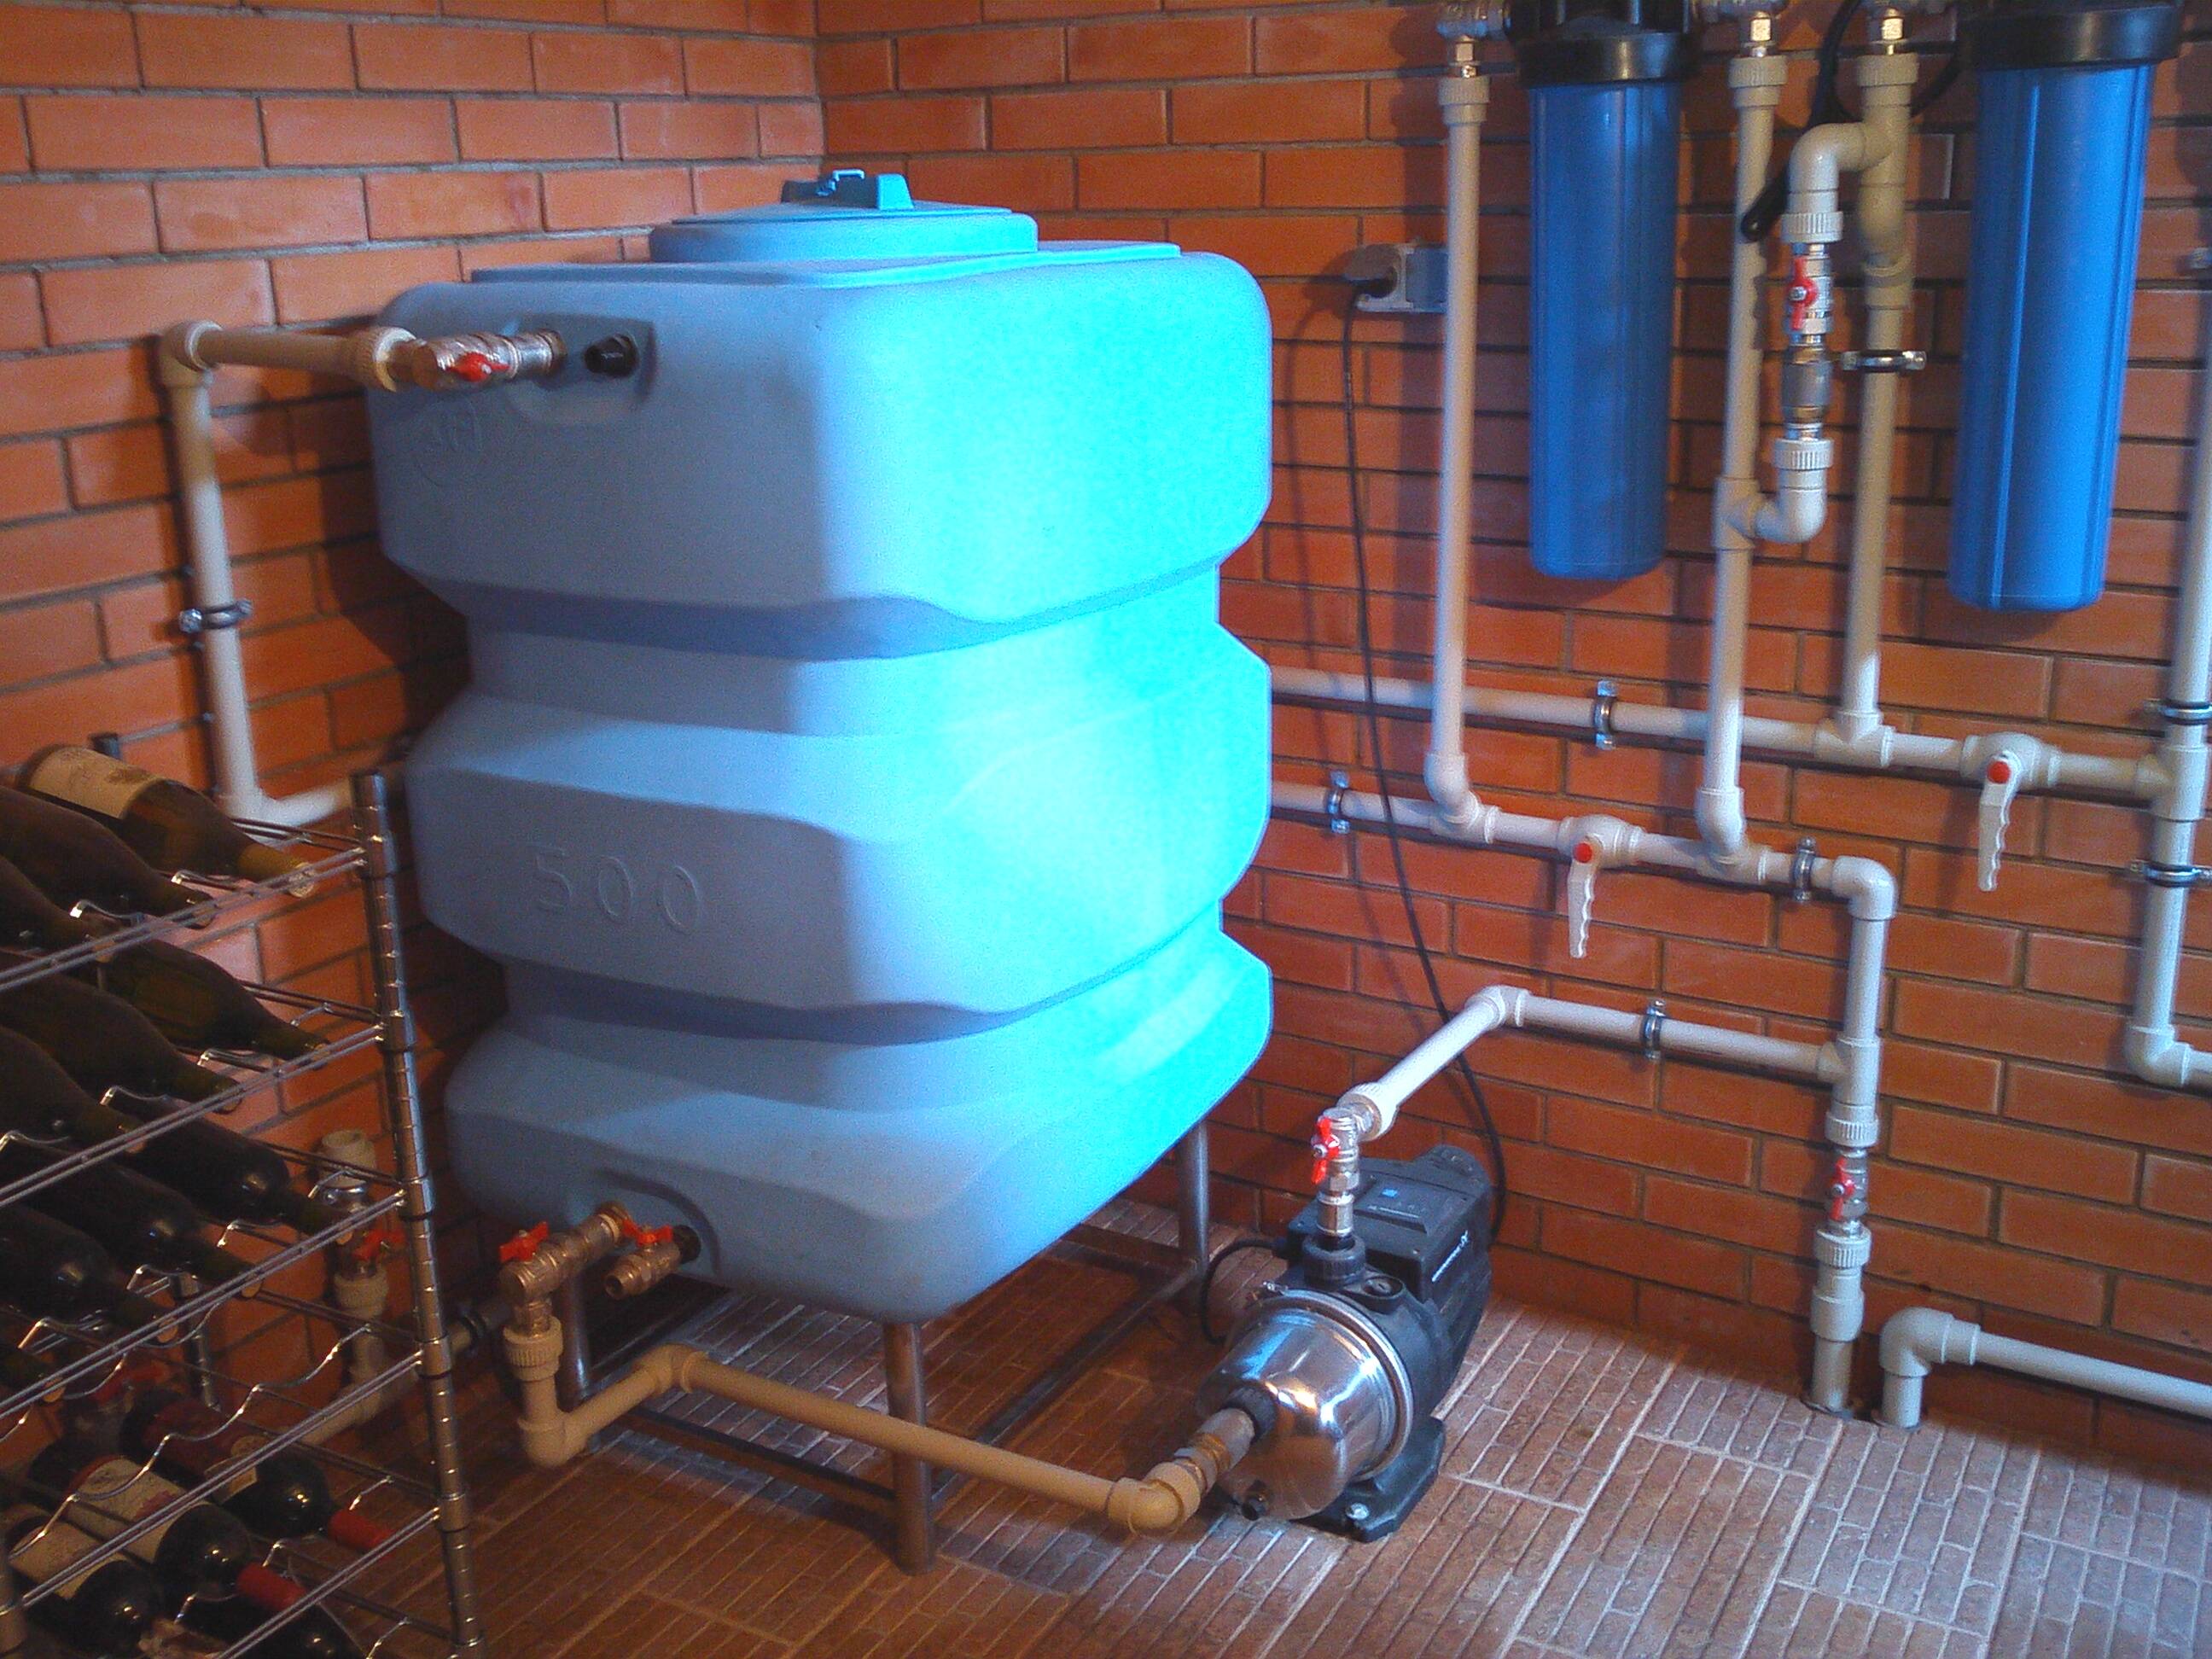 Подключение стиральной машины без водопровода: подробная инструкция, варианты и особенности